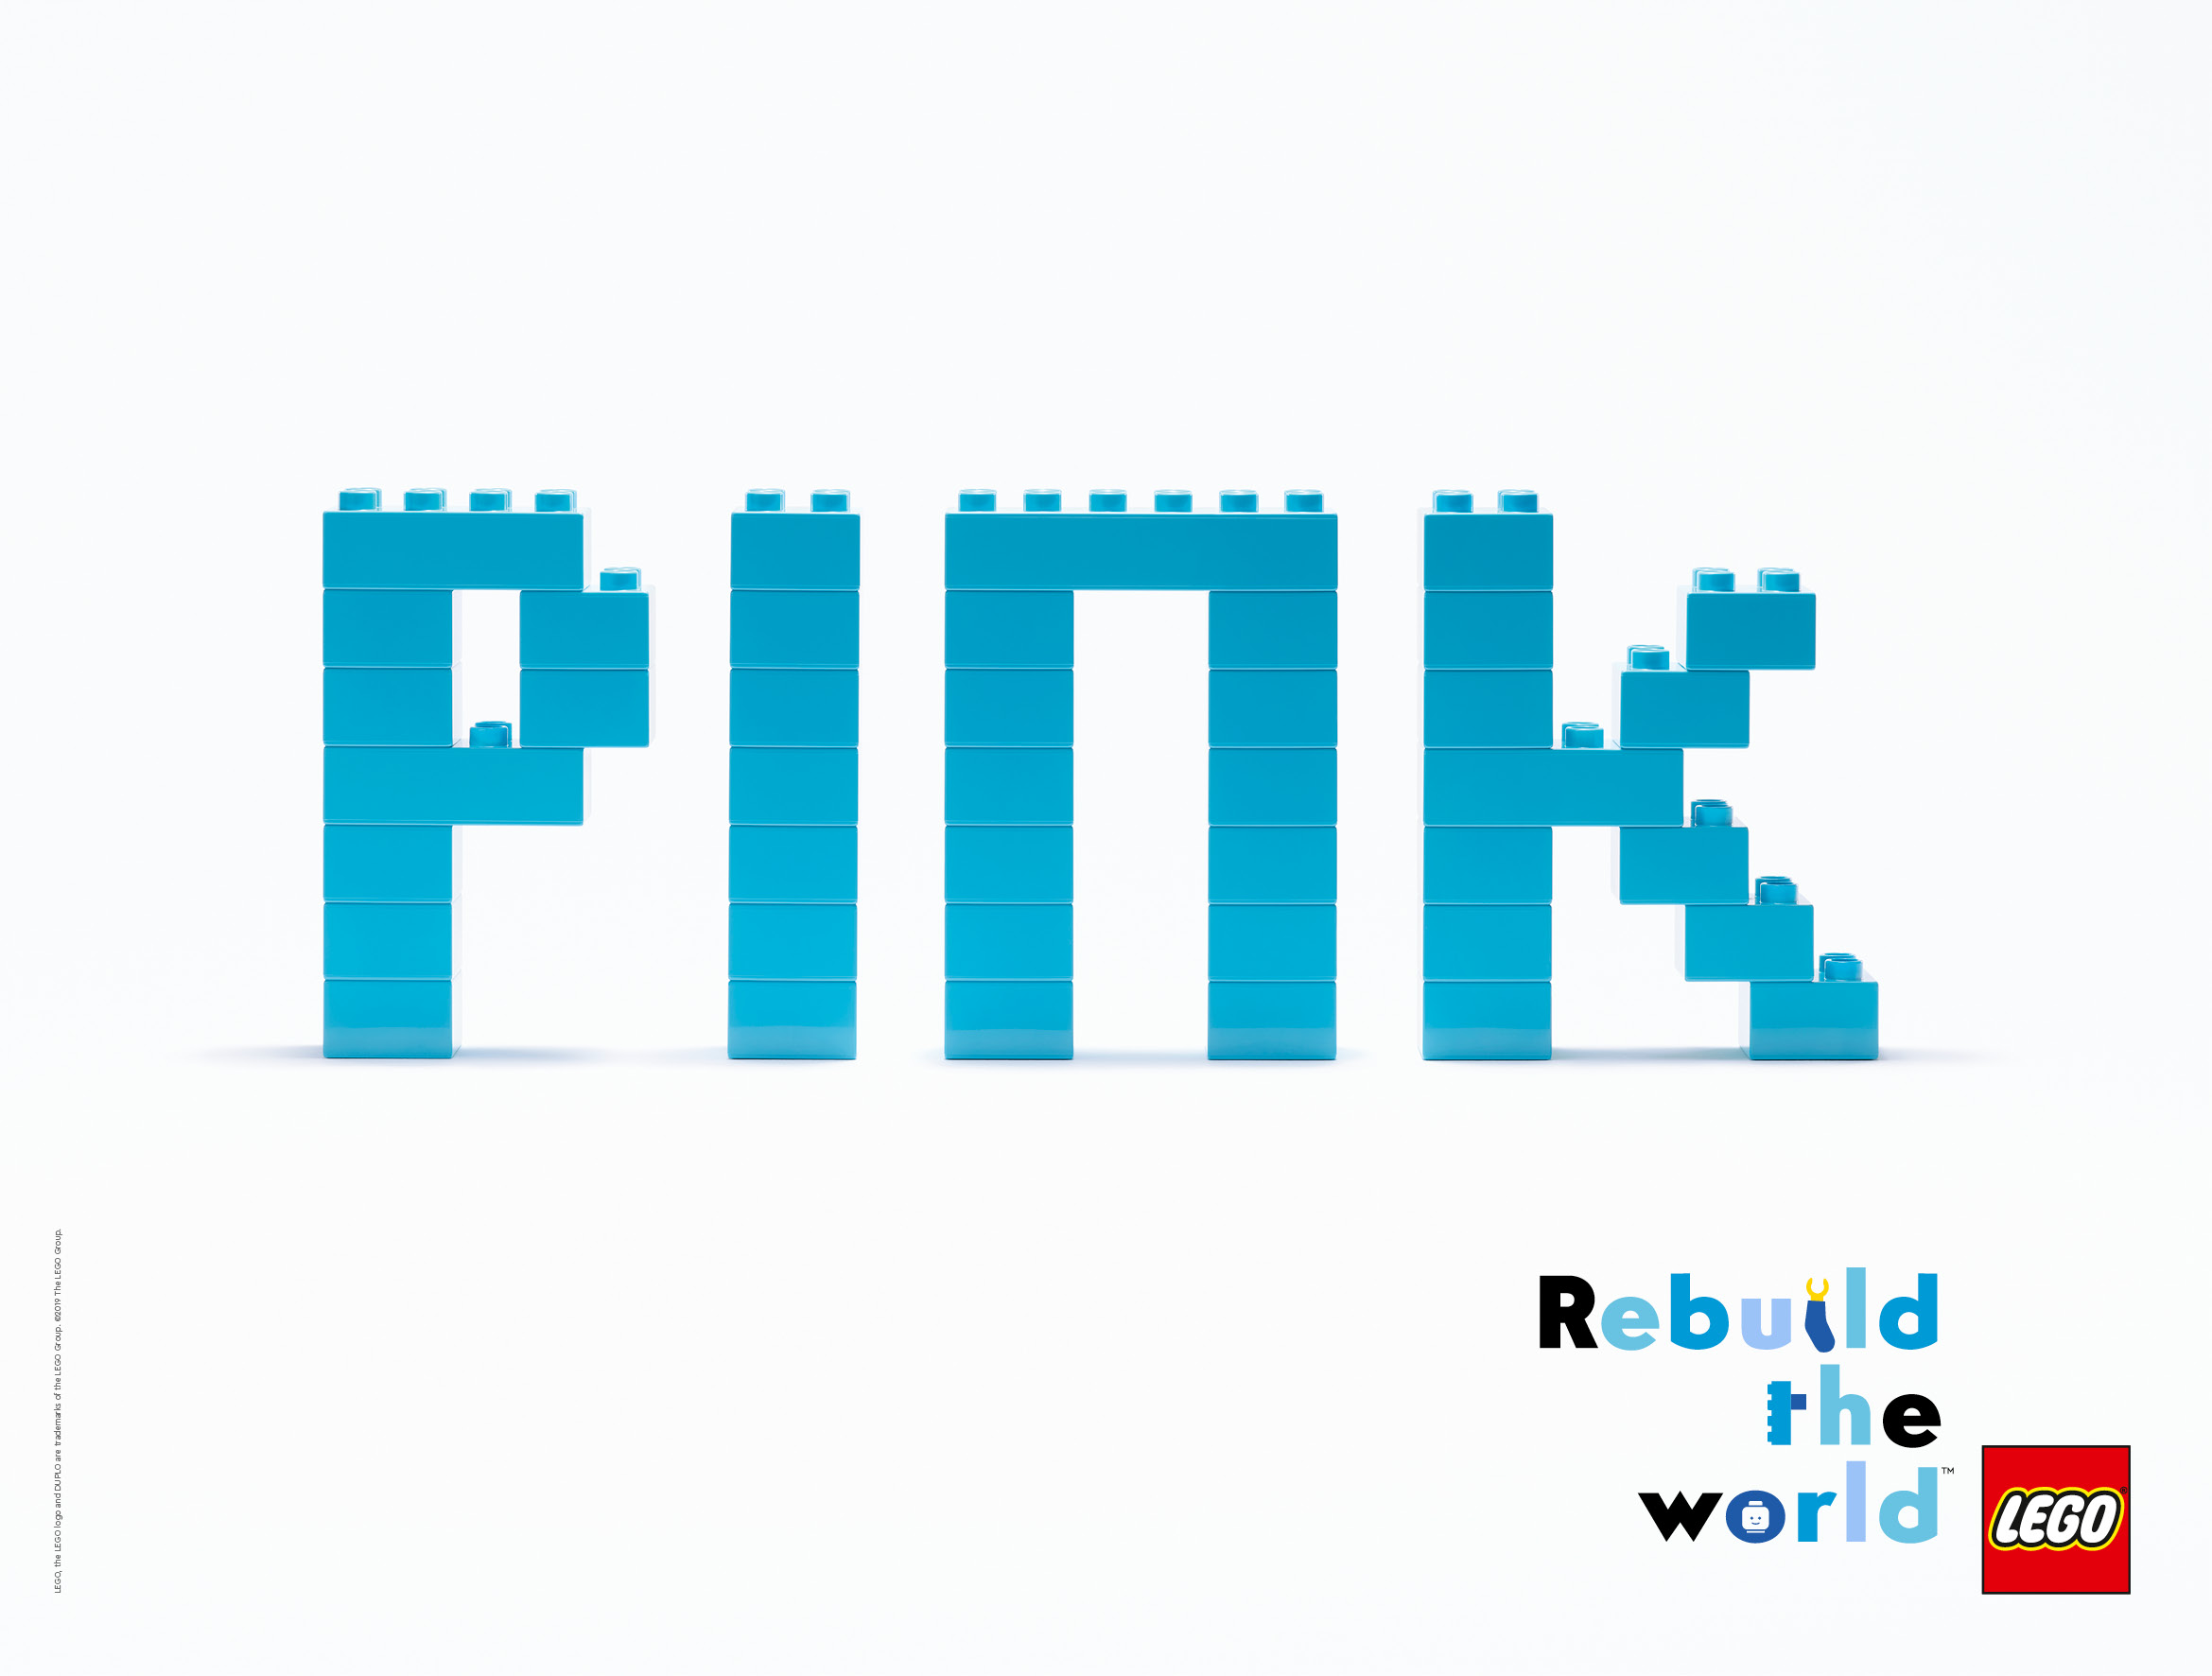 Rebuild the world (Vía Pública)